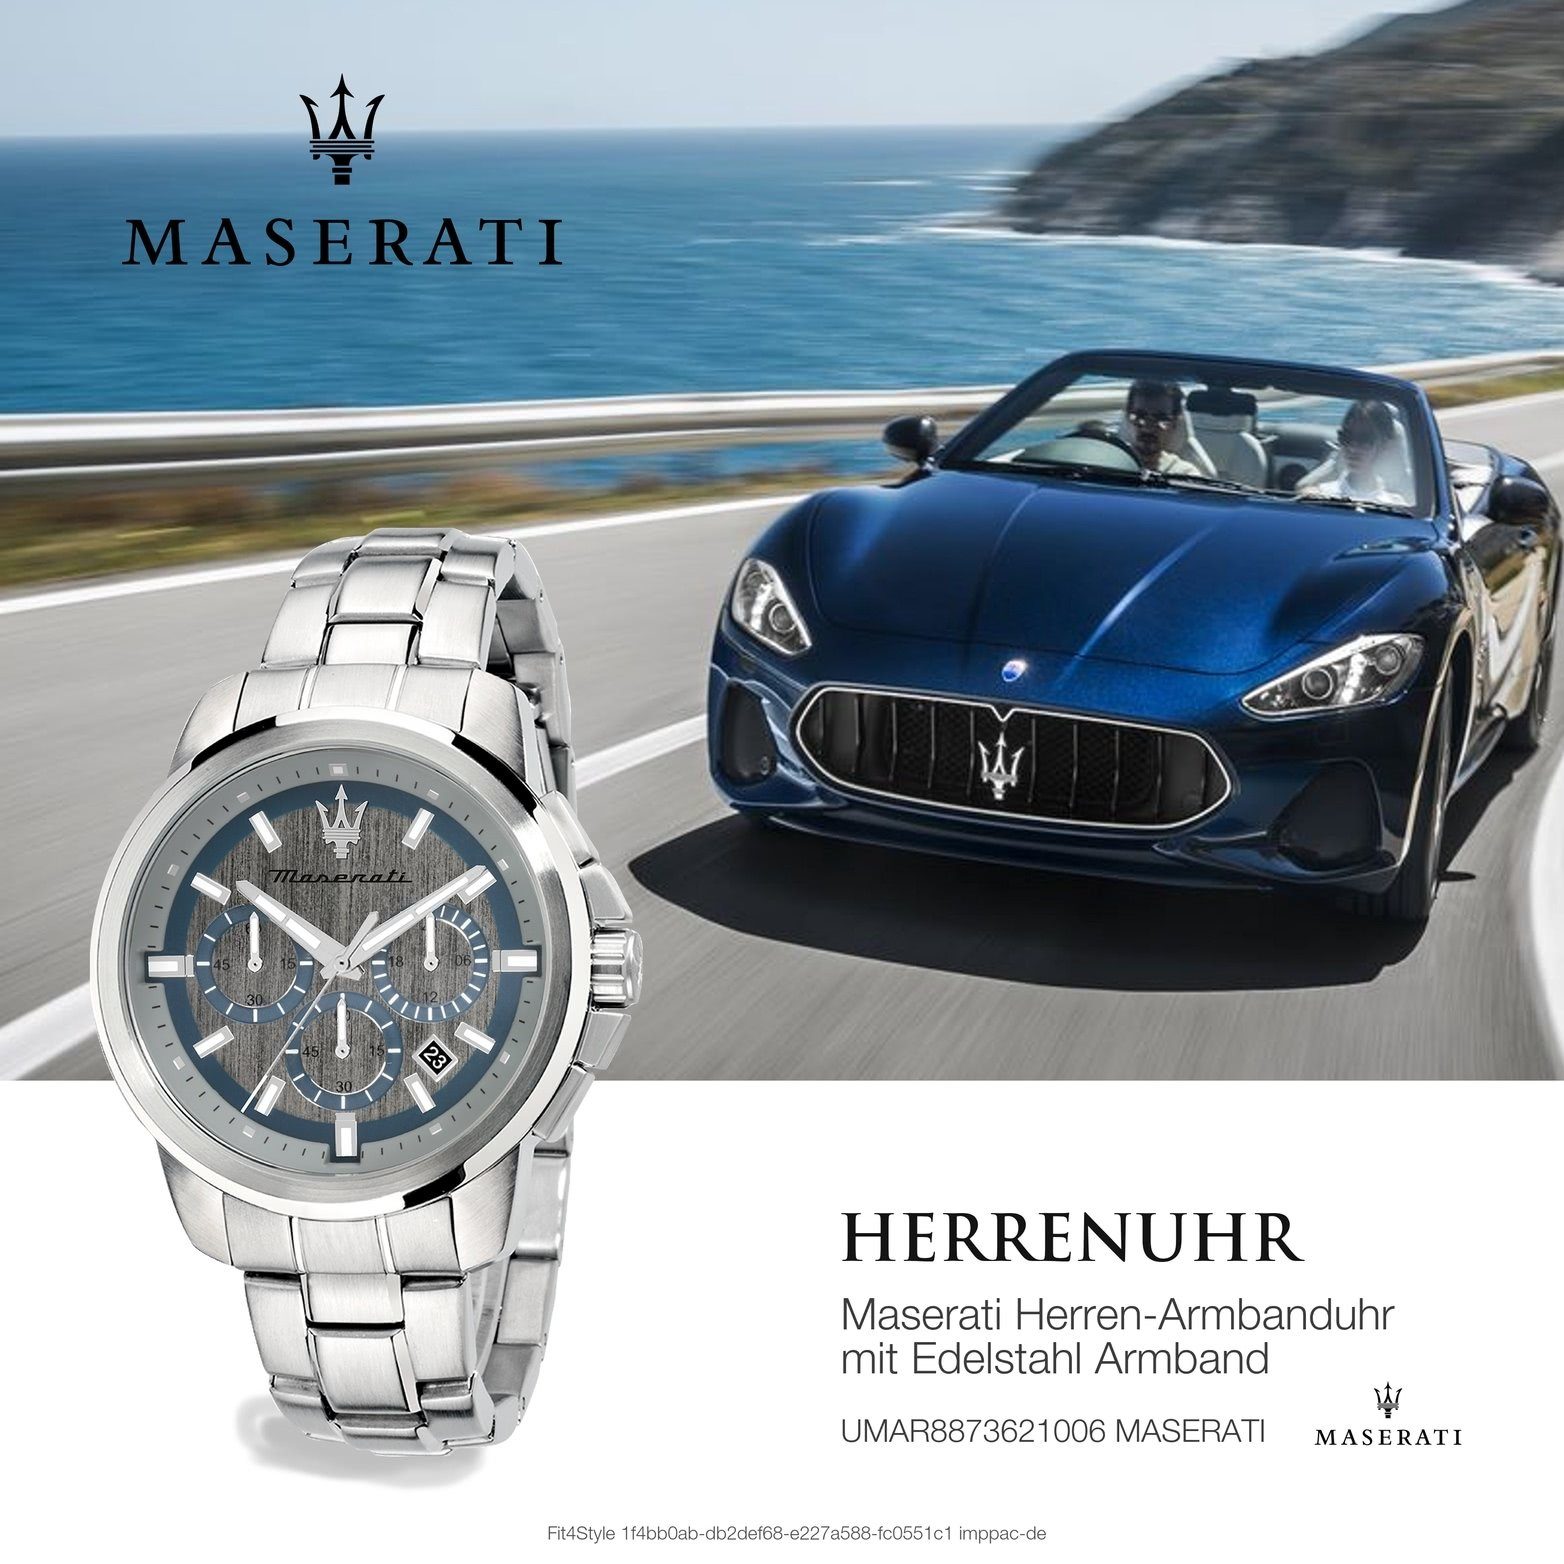 silber Chronograph rundes Edelstahlarmband, 52x44mm) (ca. Herrenuhr Maserati Gehäuse, groß Edelstahl MASERATI Armband-Uhr,